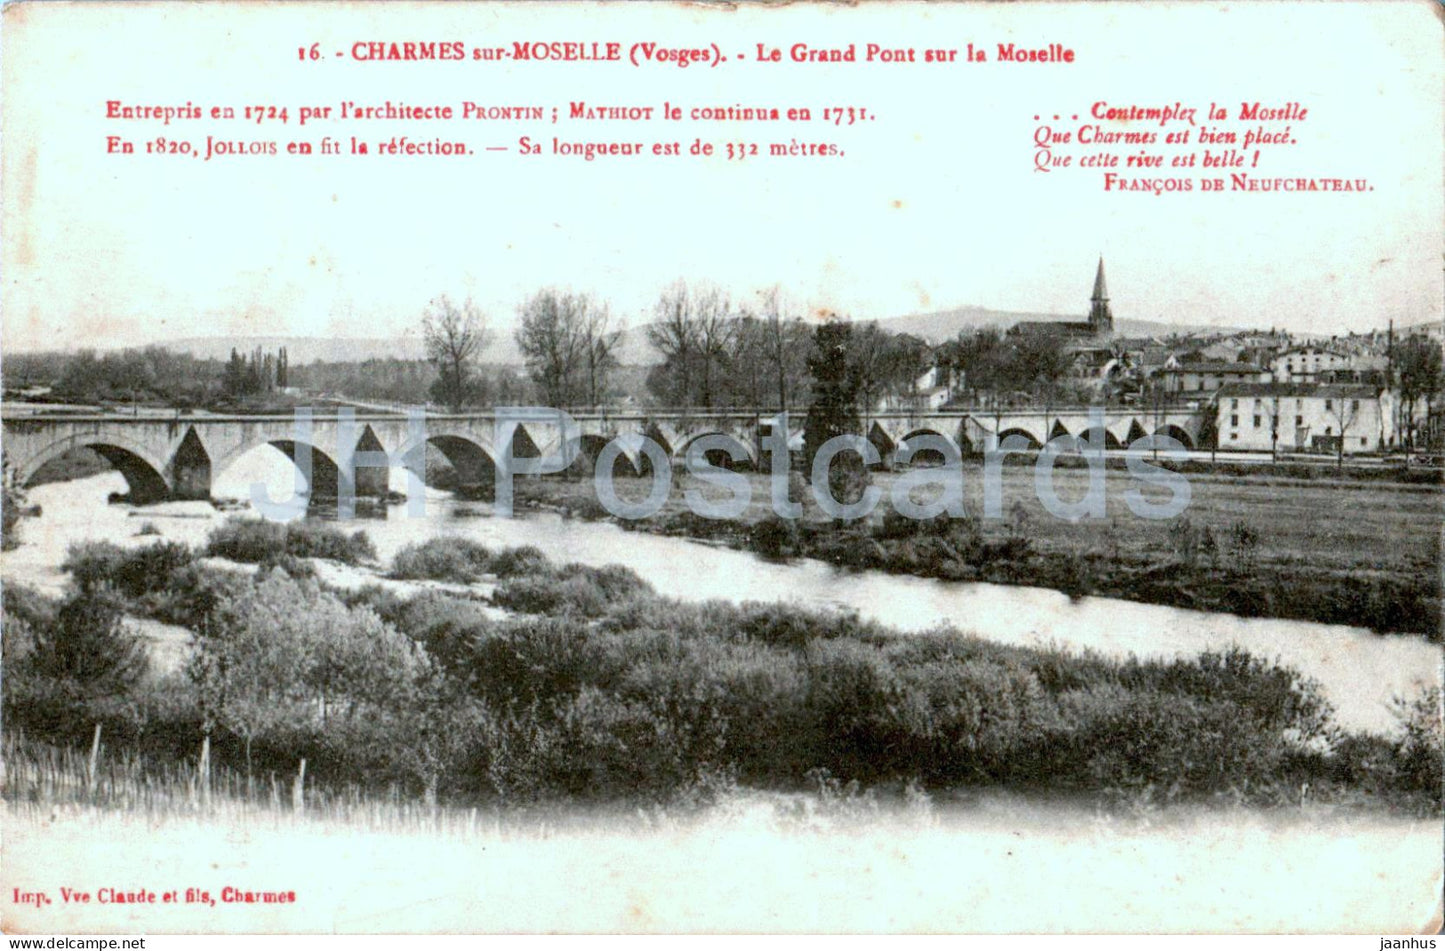 Charmes sur Moselle - Le Grand Pont sur la Moselle - bridge - 16 - old postcard - 1915 - France - used - JH Postcards